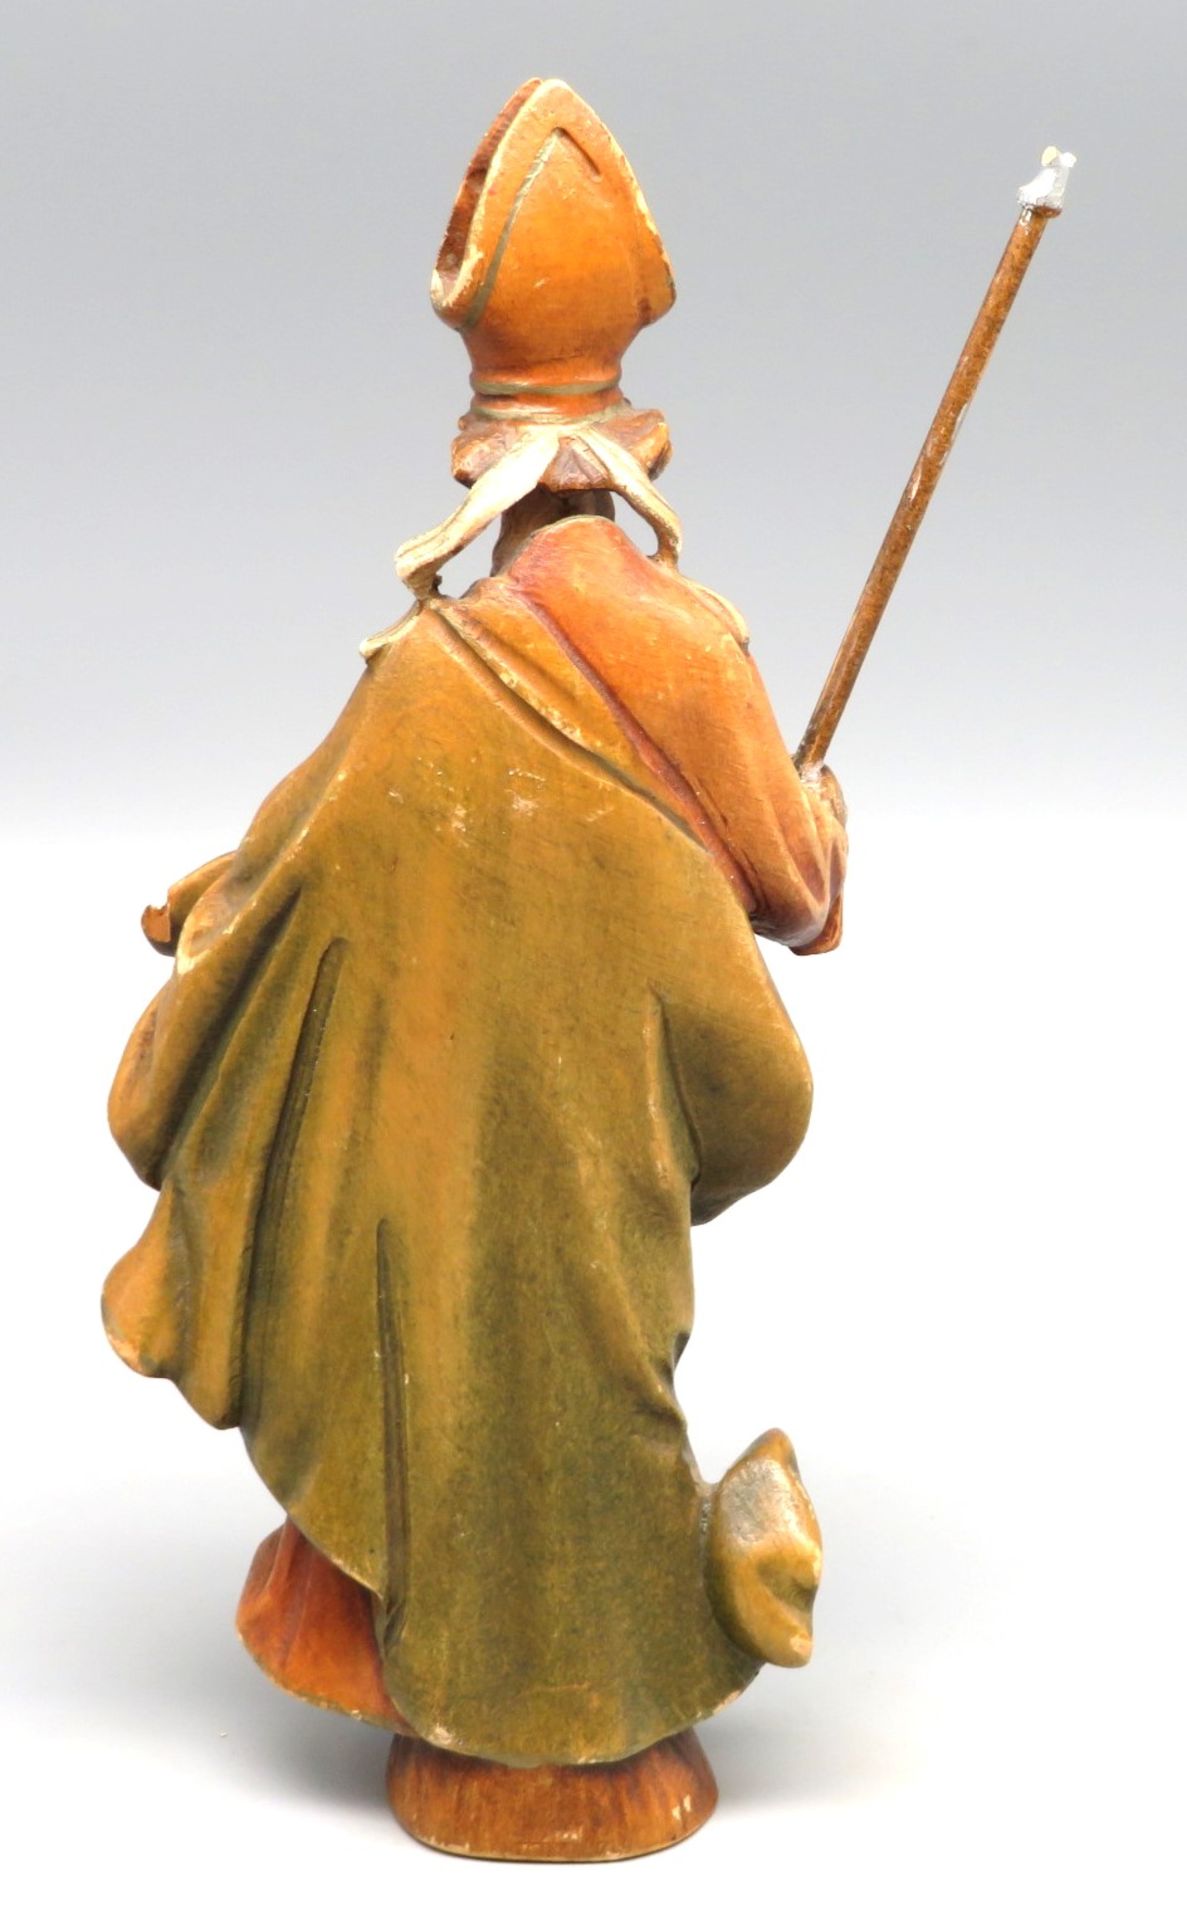 Statuette des Heiligen Urban, gem. "Eugen Langsel Oberammergau", Holz geschnitzt und farbig gefasst - Bild 2 aus 2